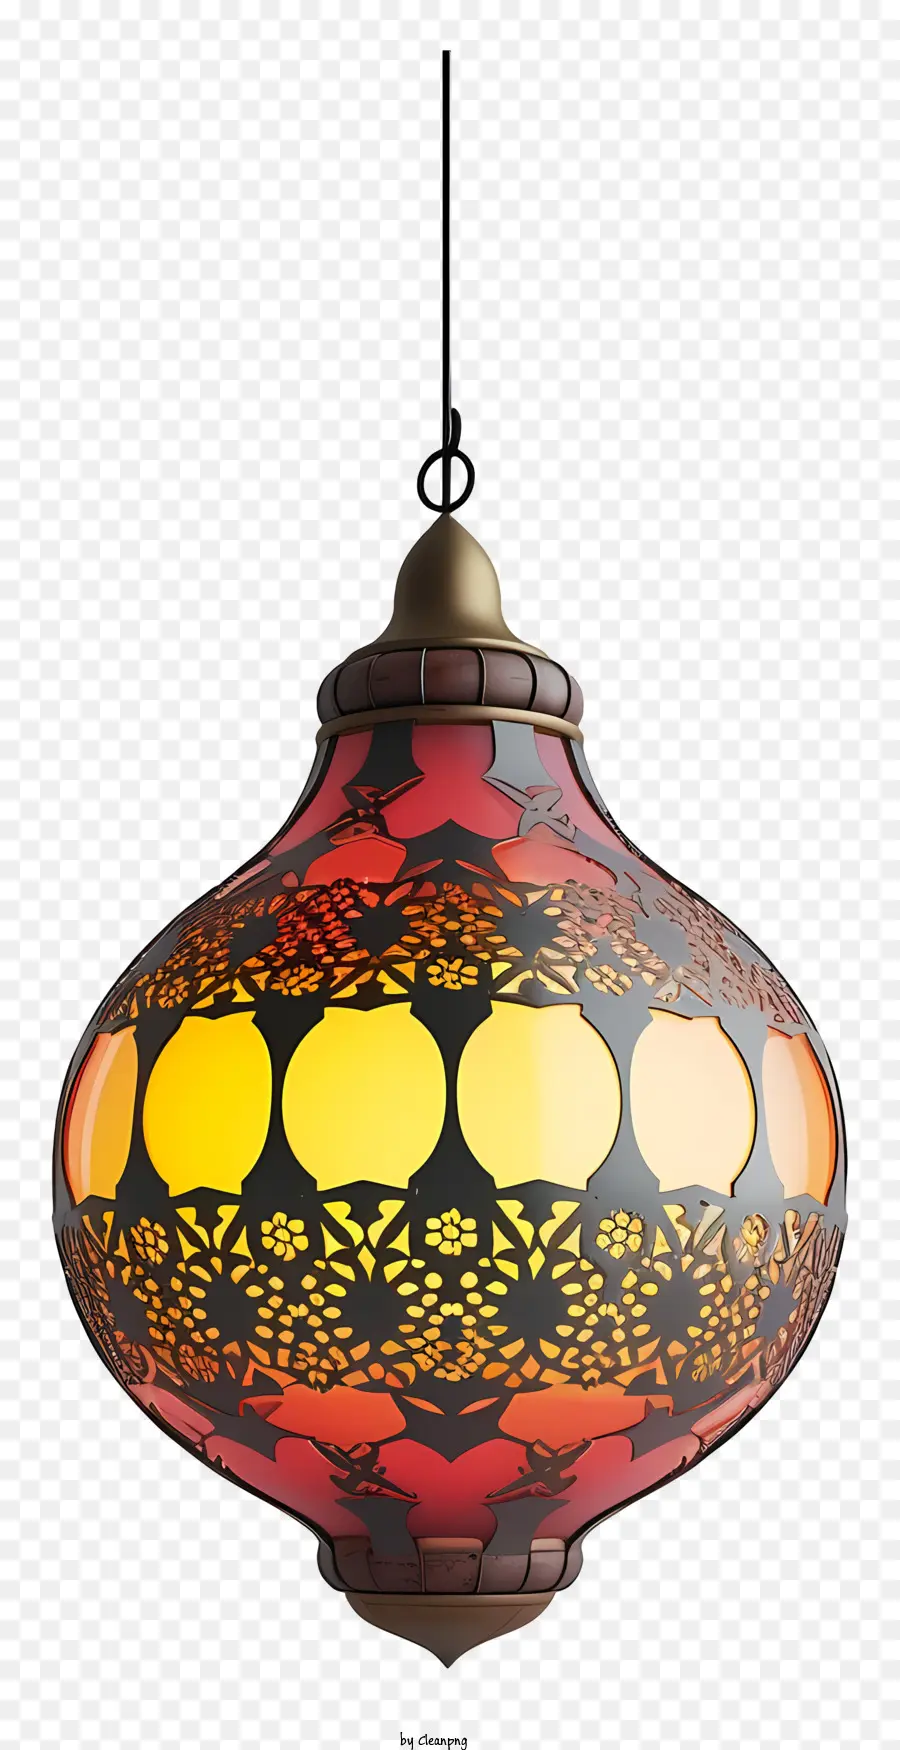 islamische Lampe - Farbenfrohe Glaslampe, die an der schwarzen Kette hängt